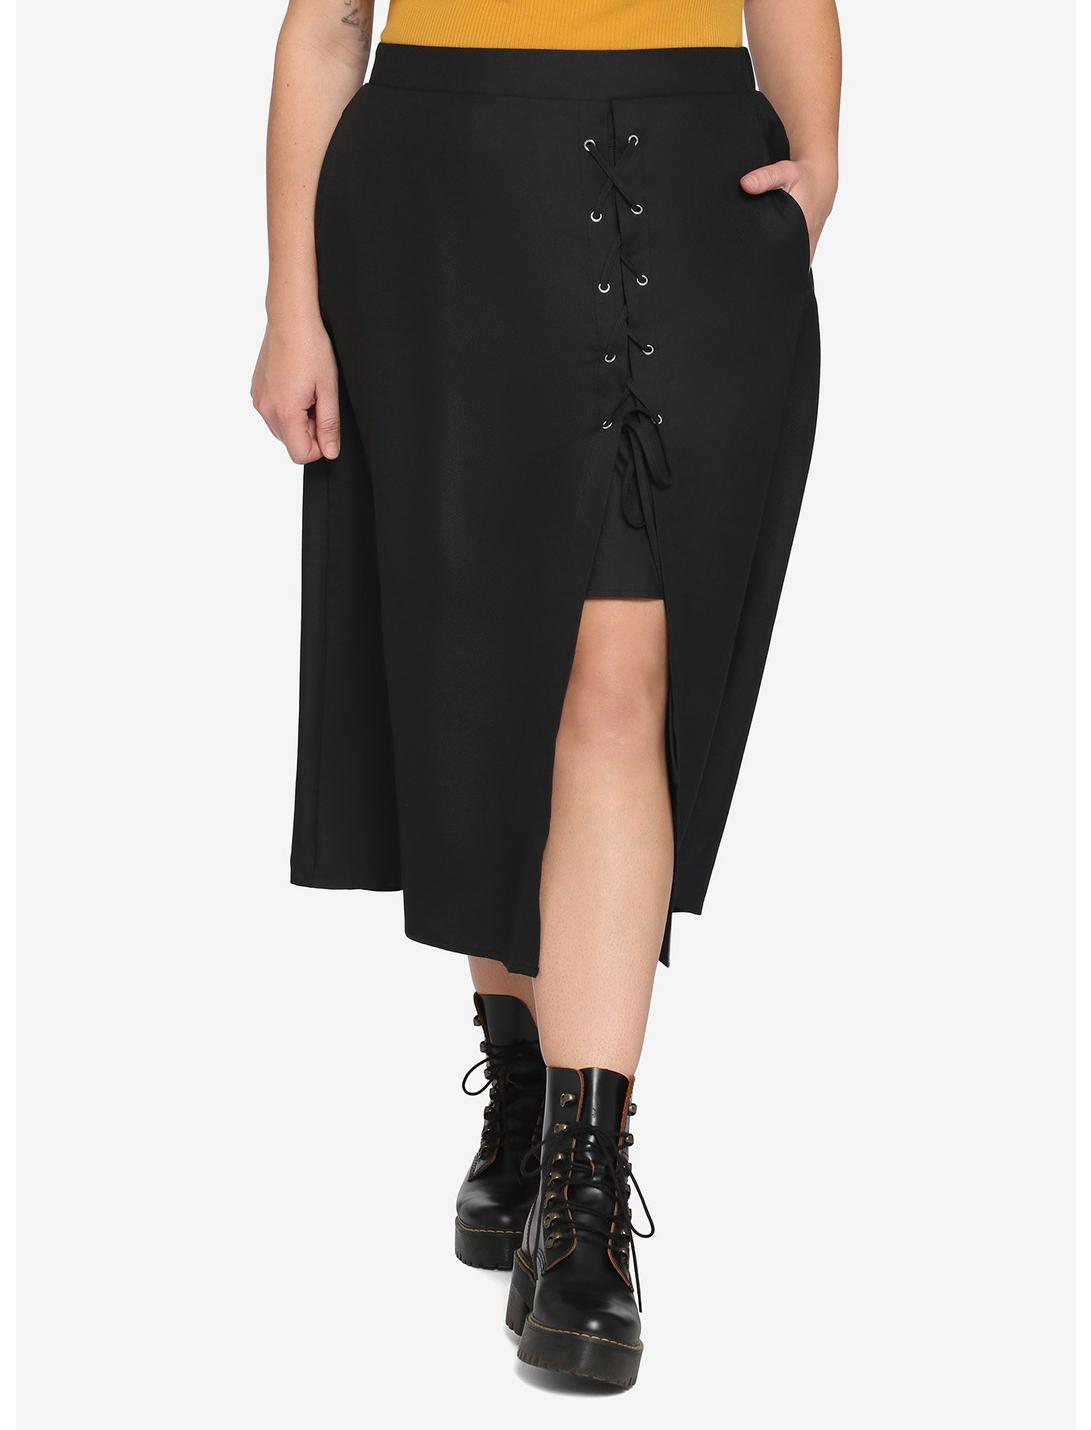 Black Lace-Up Slit Midi Skirt Plus Size, BLACK, hi-res